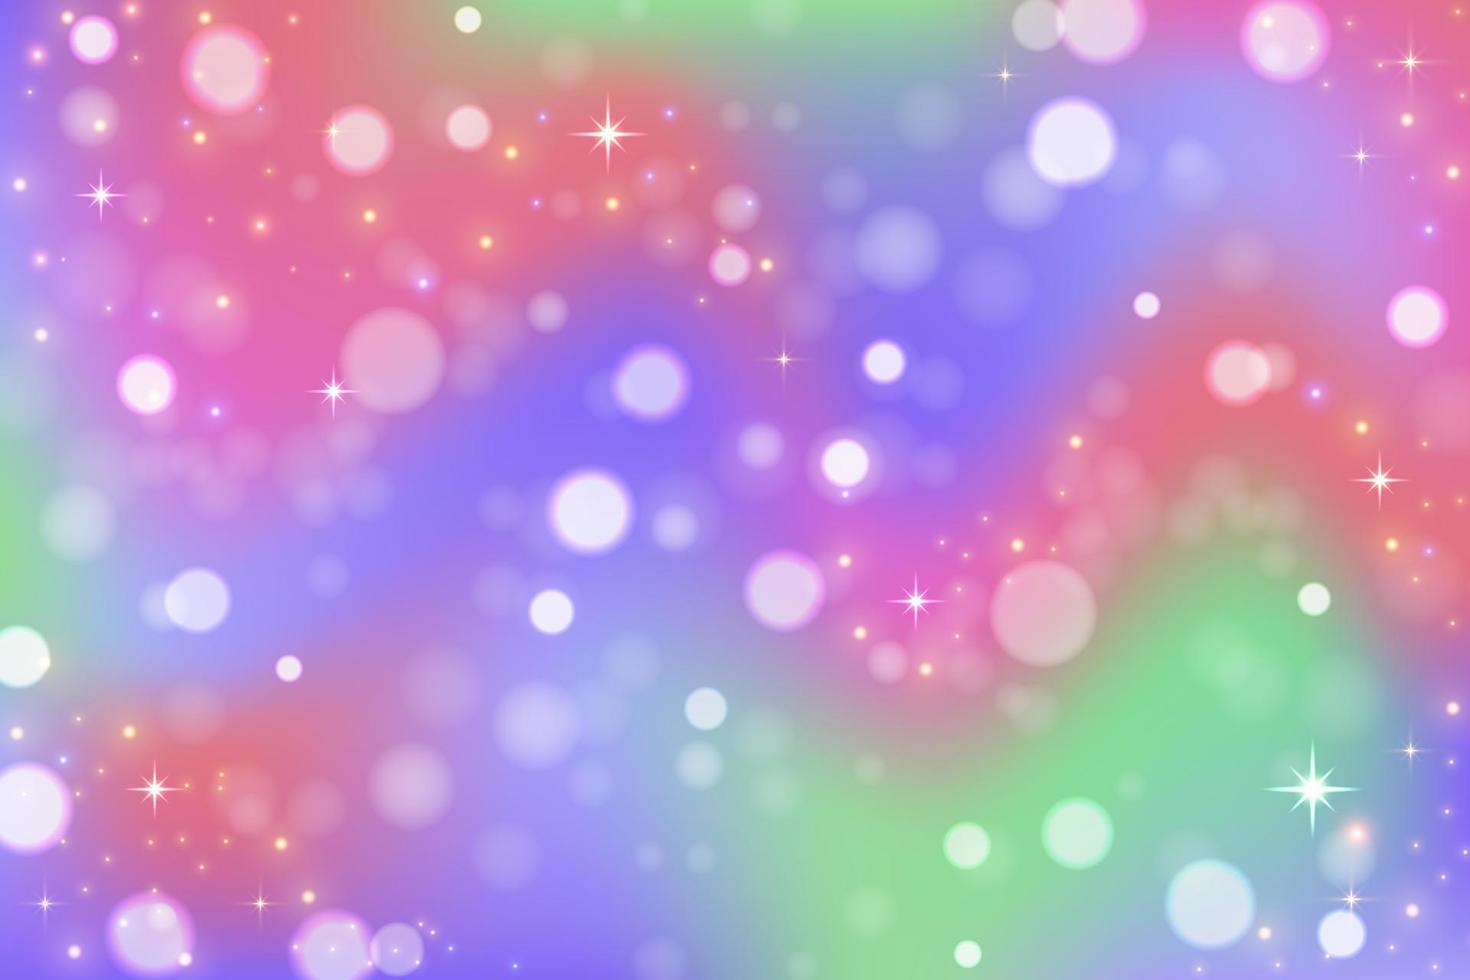 fundo de unicórnio arco-íris. céu de cor gradiente pastel com glitter e bokeh. espaço mágico da galáxia e estrelas. padrão abstrato de vetor. vetor